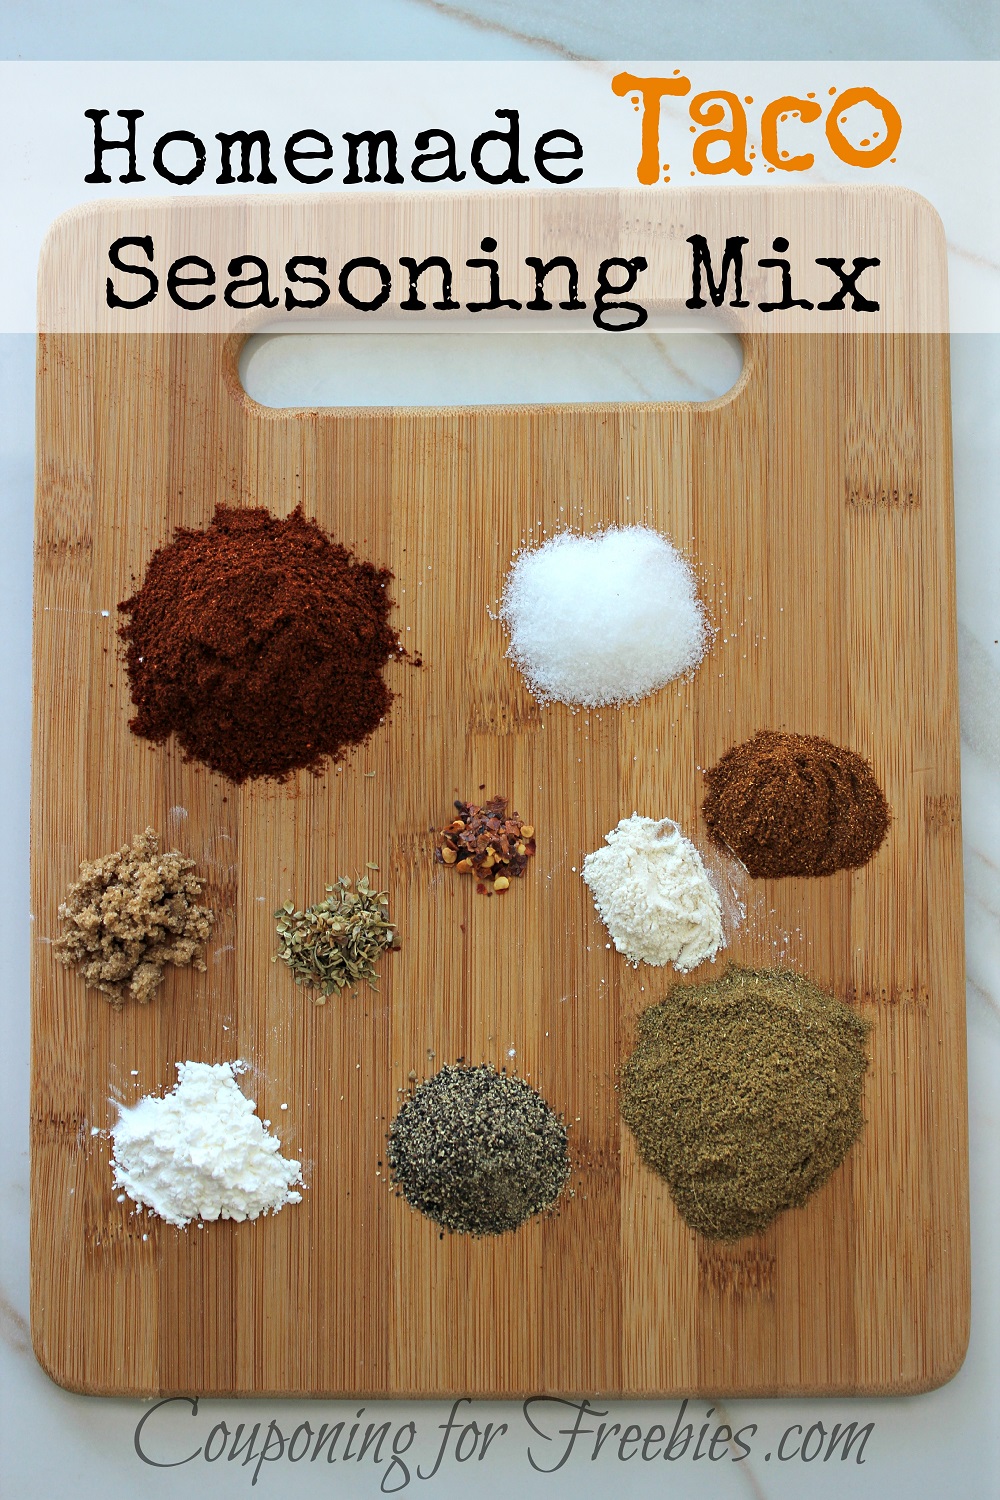 Homemade Taco Seasoning Mix Recipe